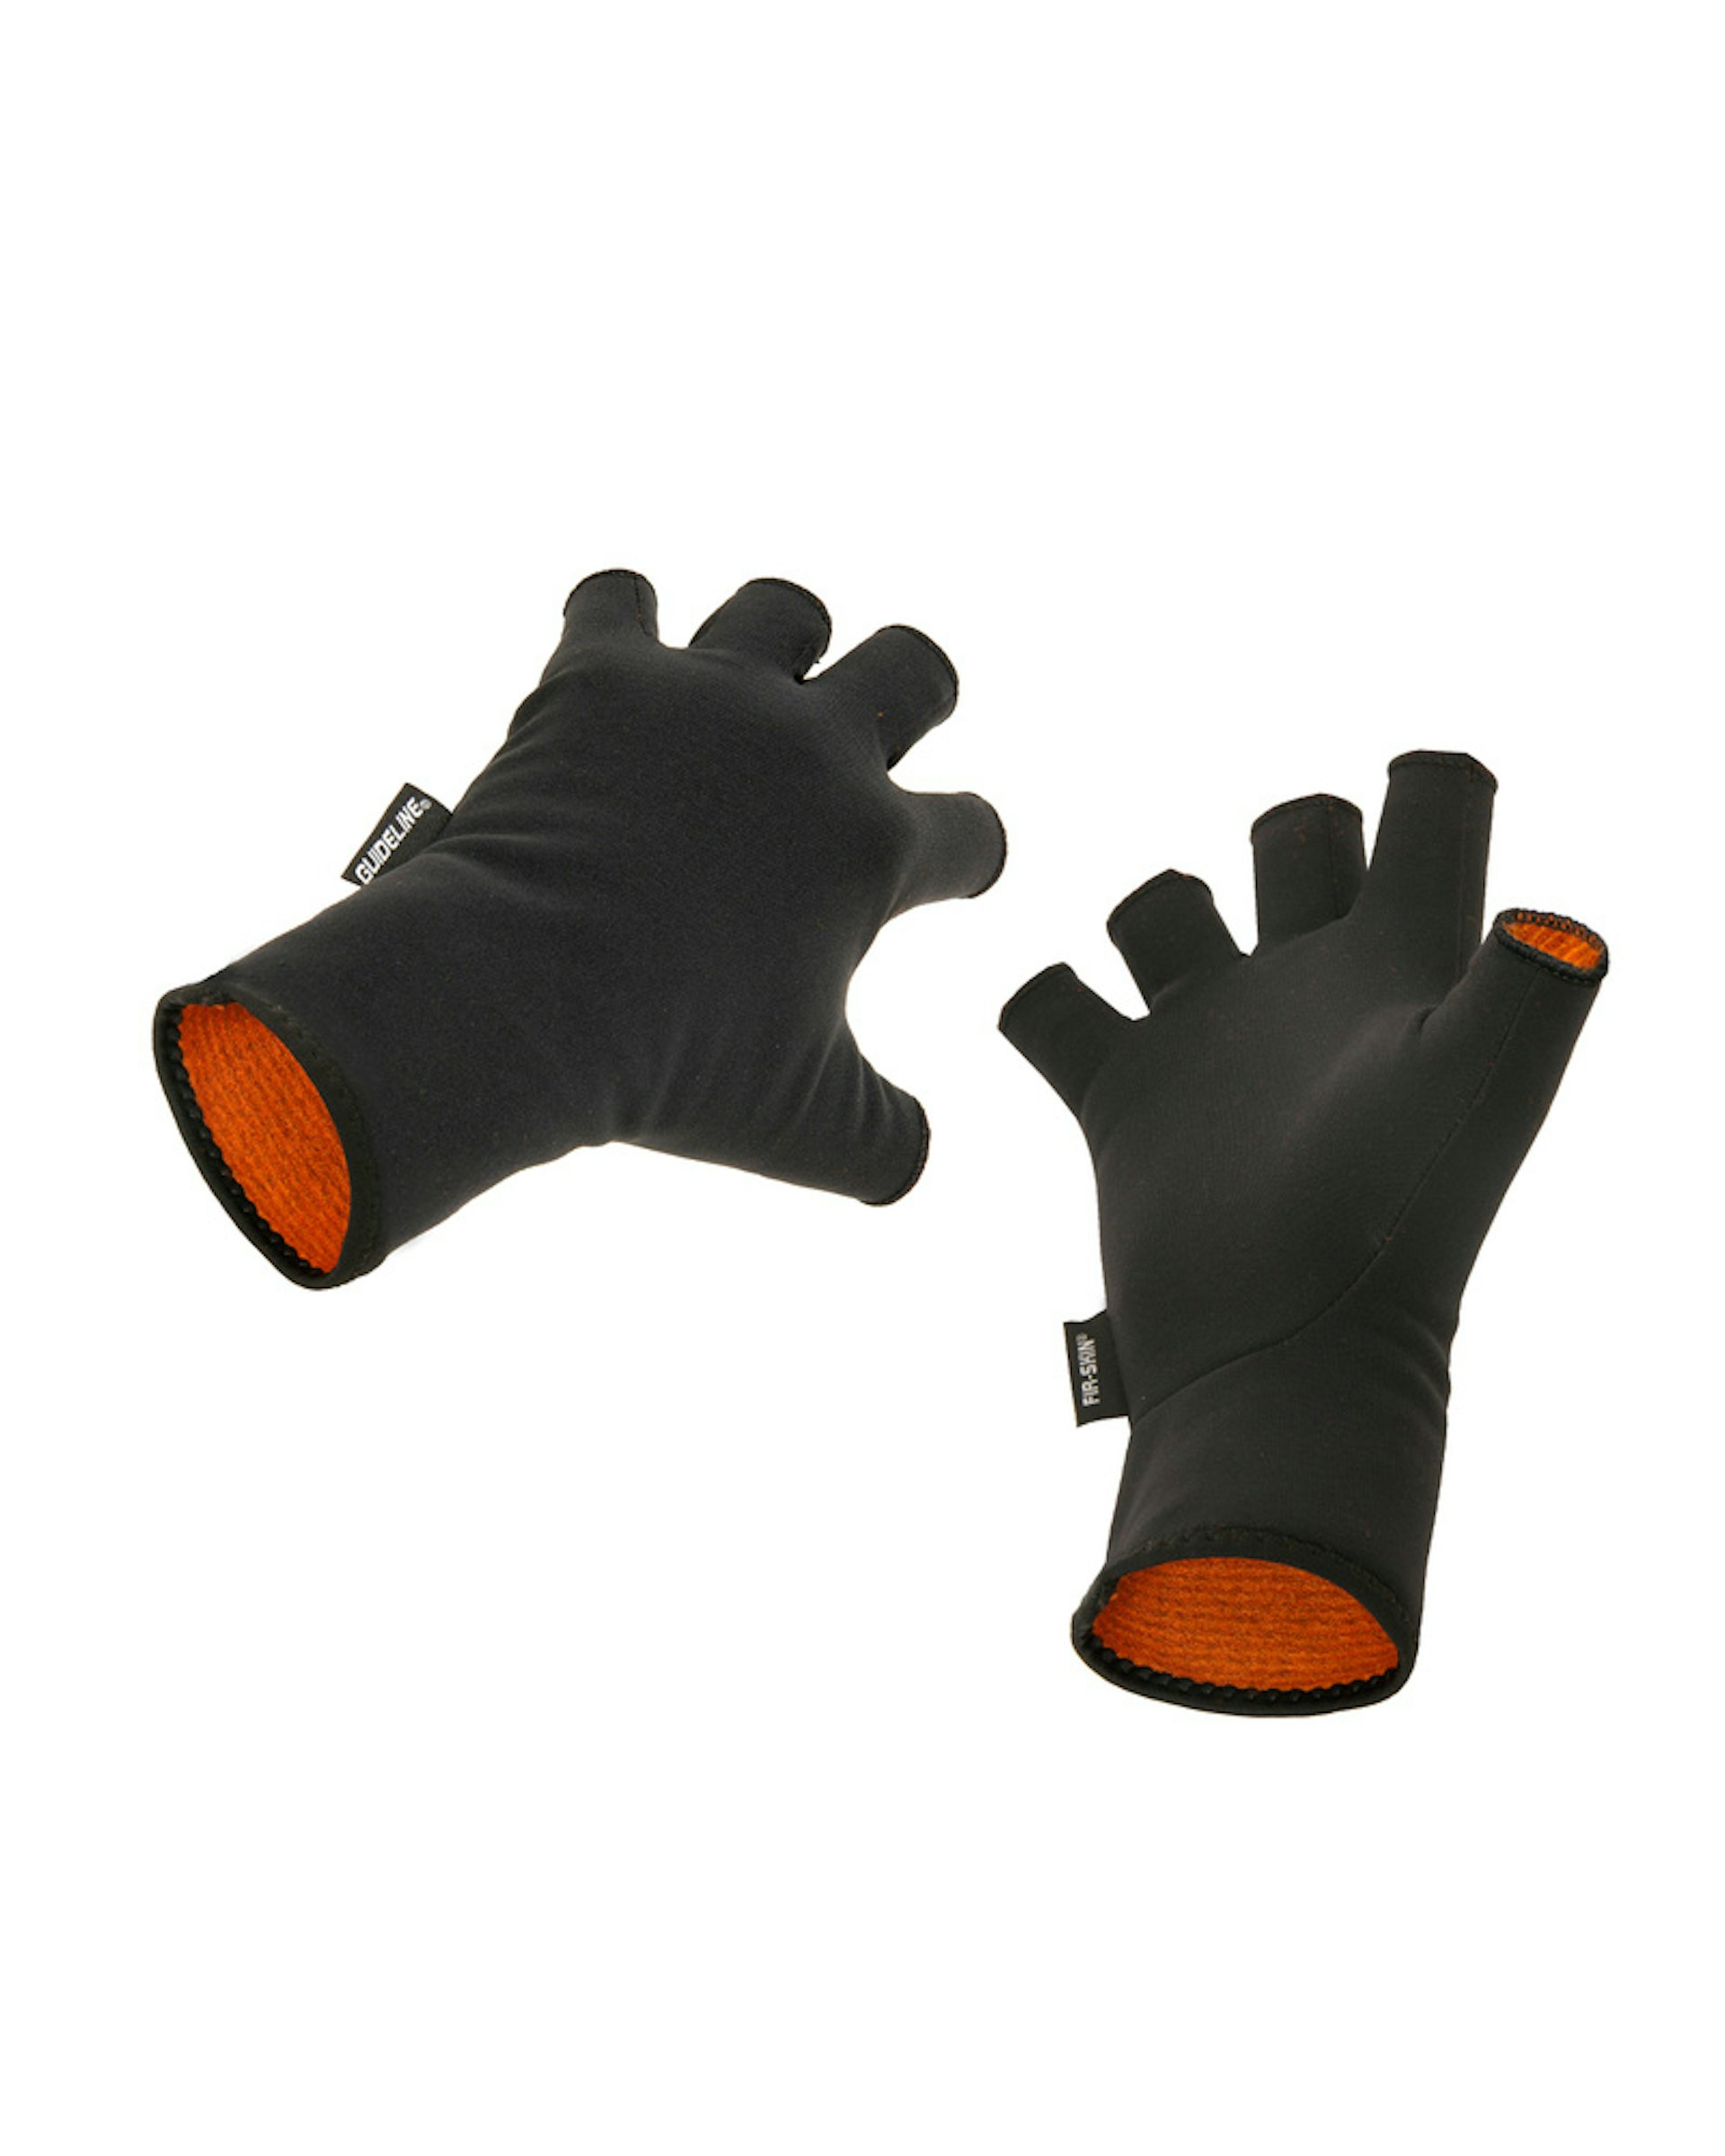 FIR-SKIN CGX Fingerless Gloves XXL (slide 1 of 1)